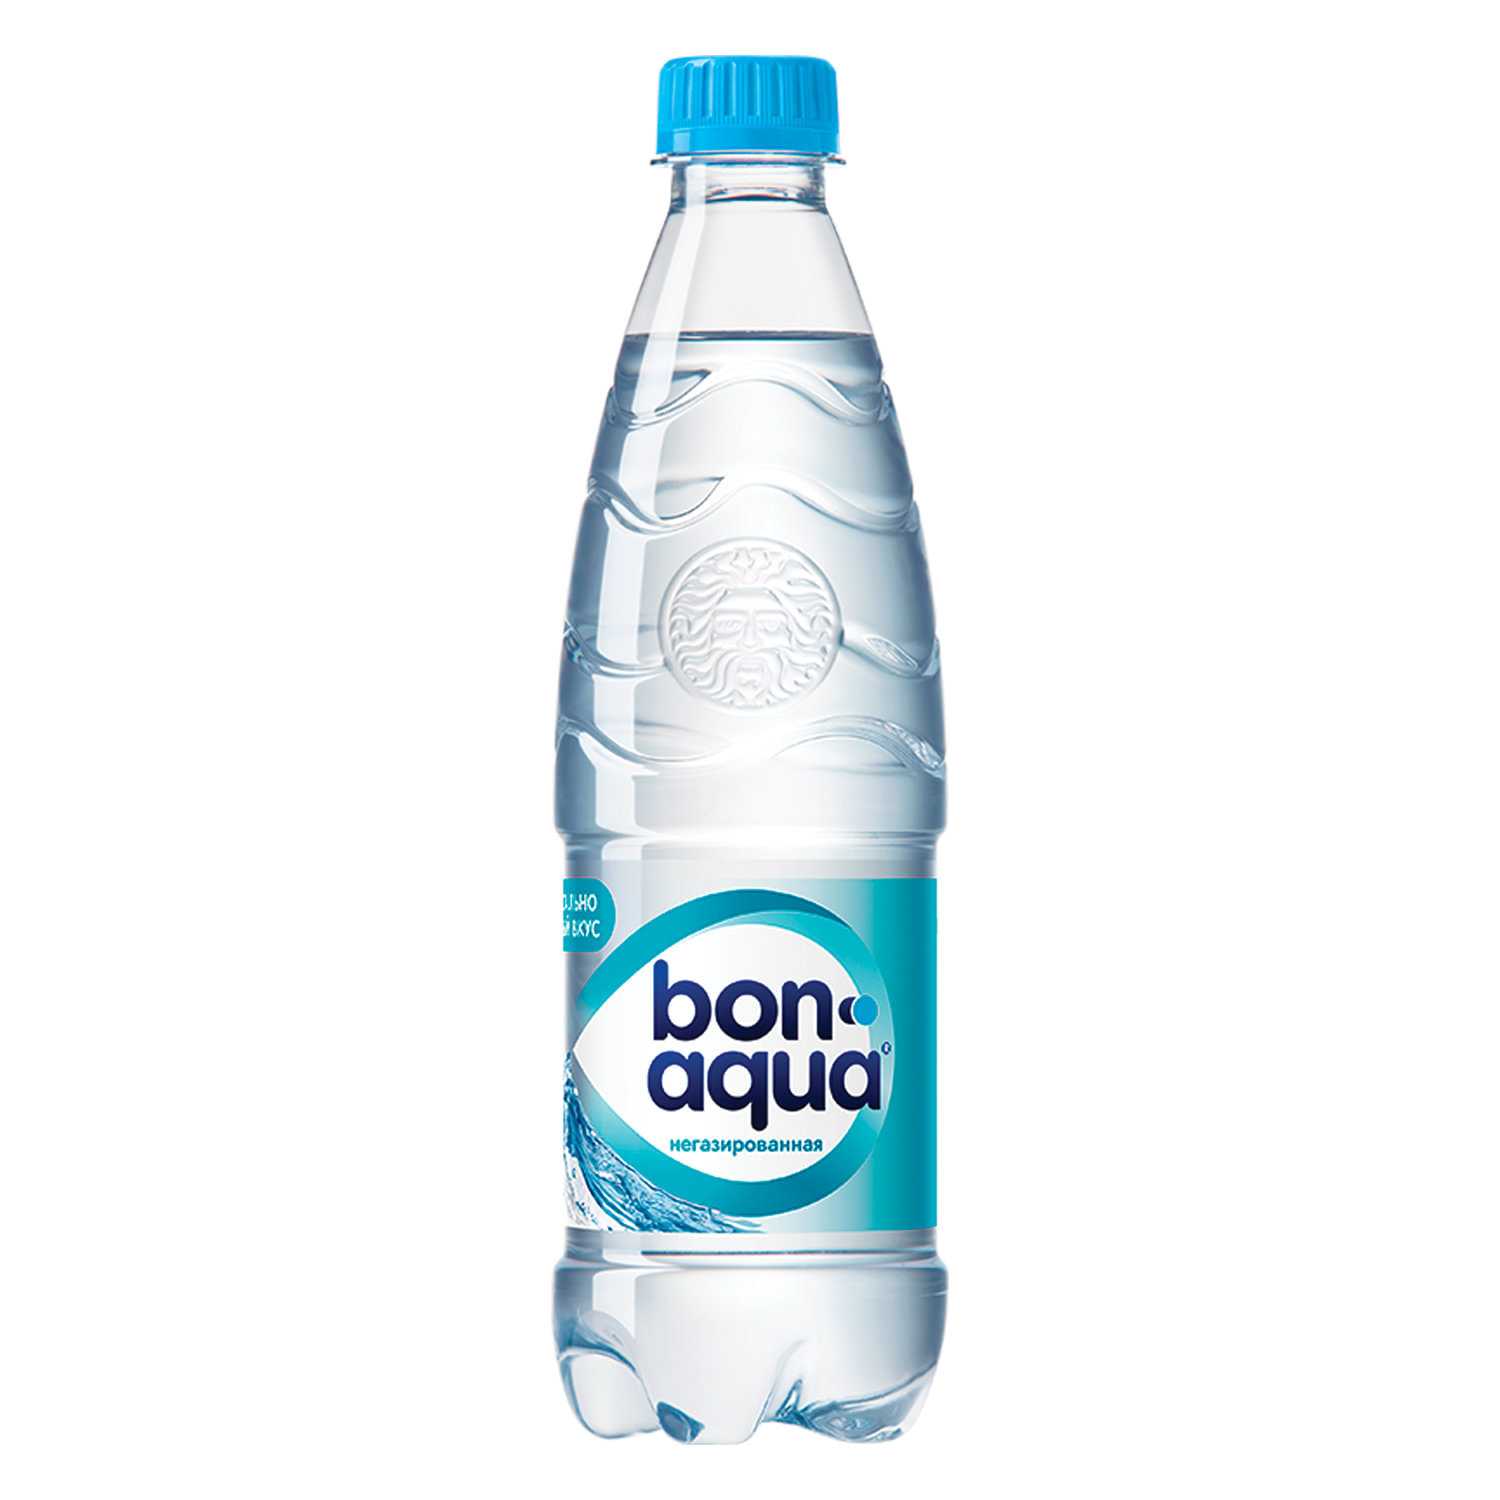 Бонаква (bonaqua) водичка от coca-cola company